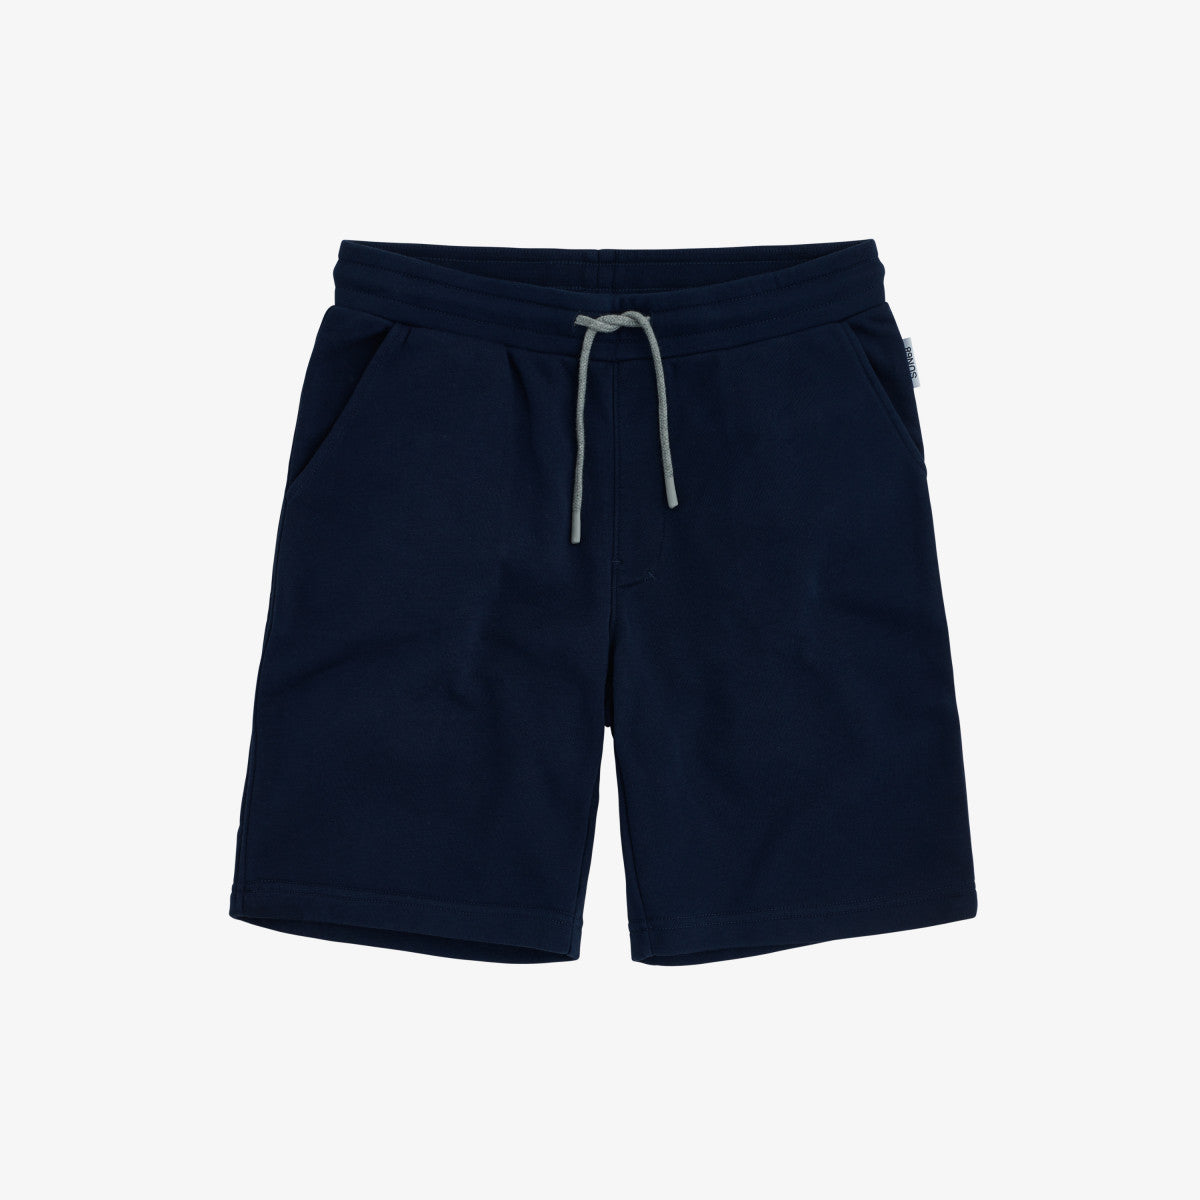 Bermuda Short in Cotone / Blu - Ideal Moda